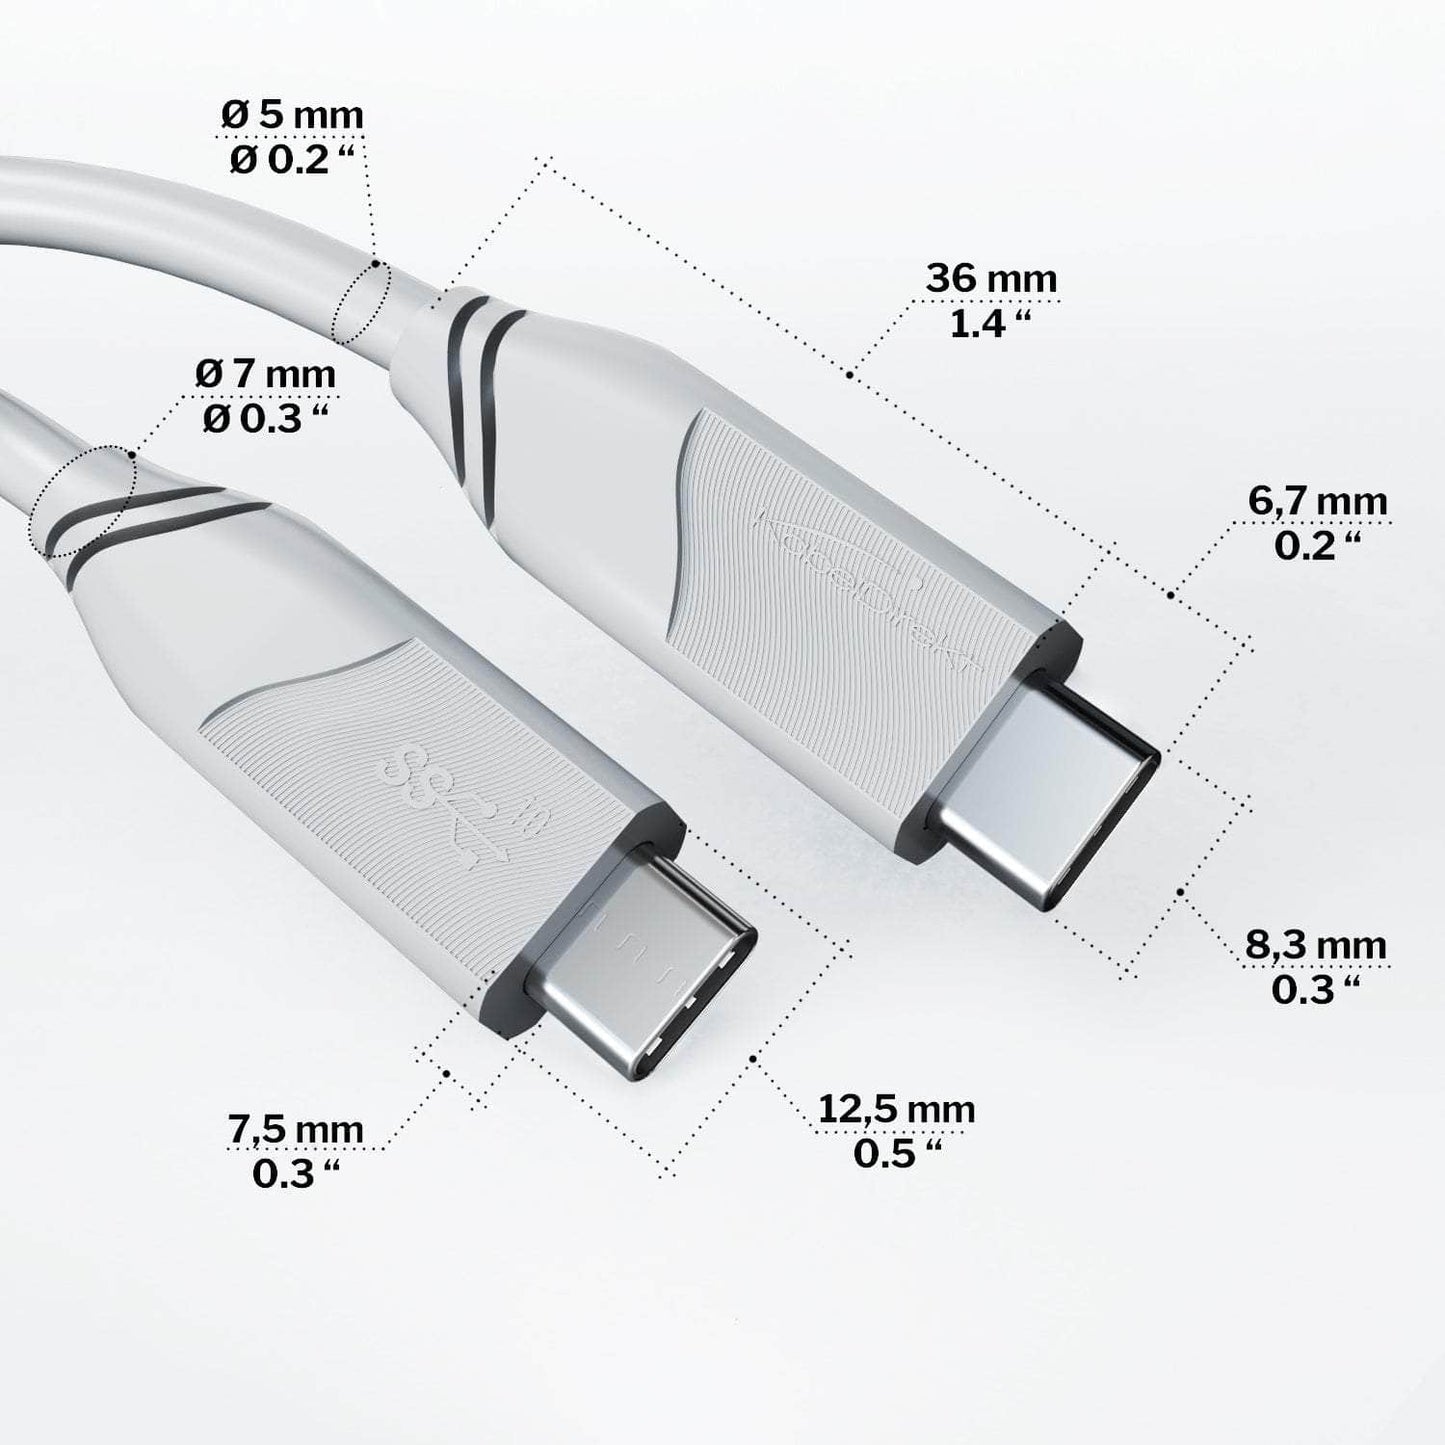 Câble USB-C, USB 3.2 Gen 2 – USB-C vers USB-C, câble de données/recharge, 10 Gbit/s, 100 W, blanc